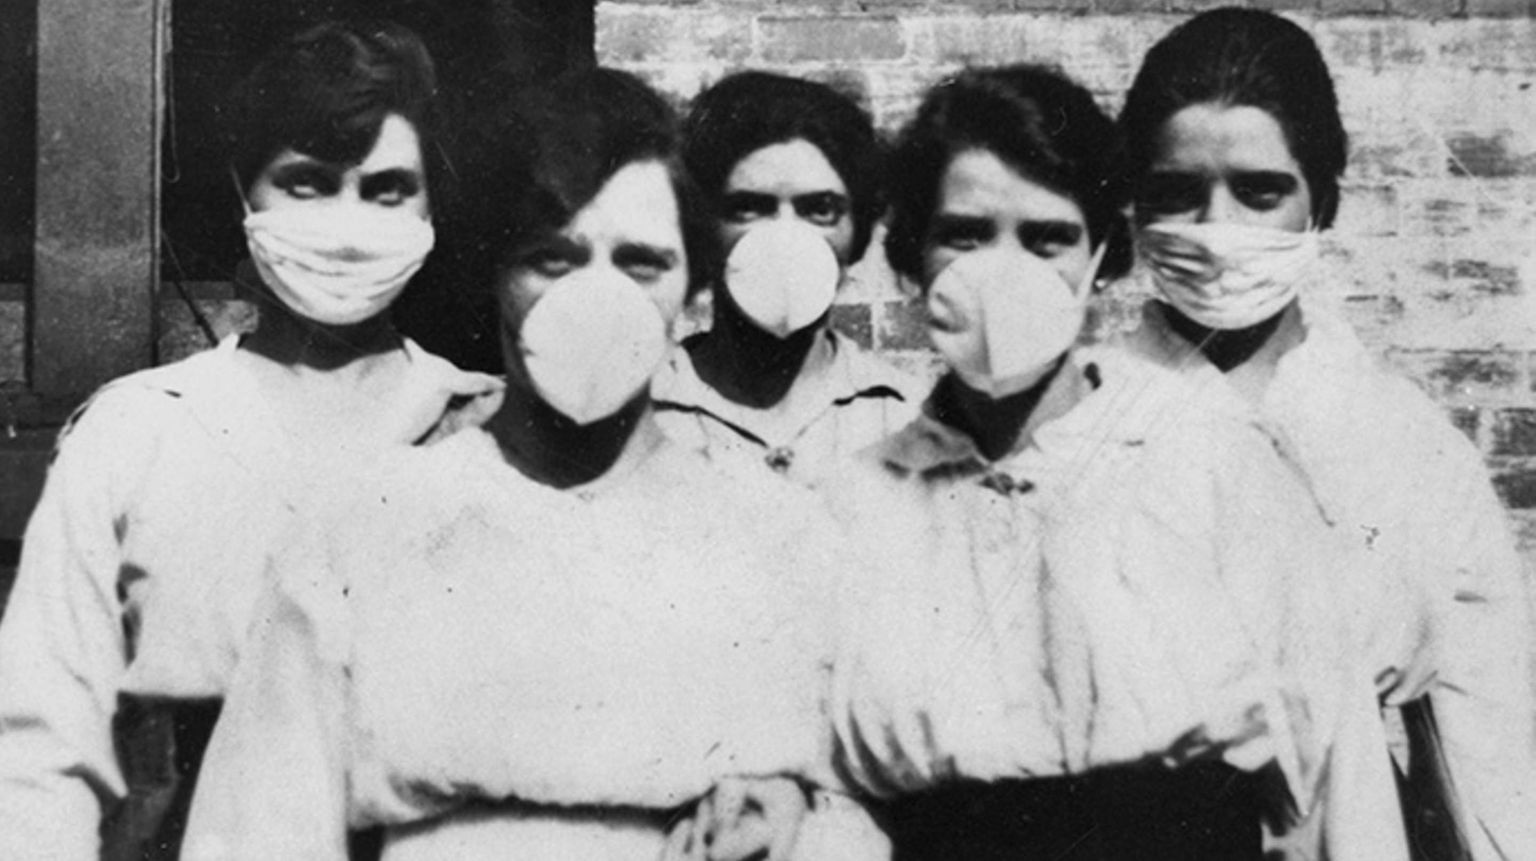 Arhiivipilt vabatahtlikest austraallastest Brisbane'is 1919. aastal, kes käisid Hispaania gripi pandeemia ajal koduvisiite tegemas. 21. sajandi uue koroonaviiruse pandeemia mõistmiseks uurivad teadlased seoseid varasemate haiguspuhangutega, sh Hispaania gripp, SARS, MERS ja seagripp.